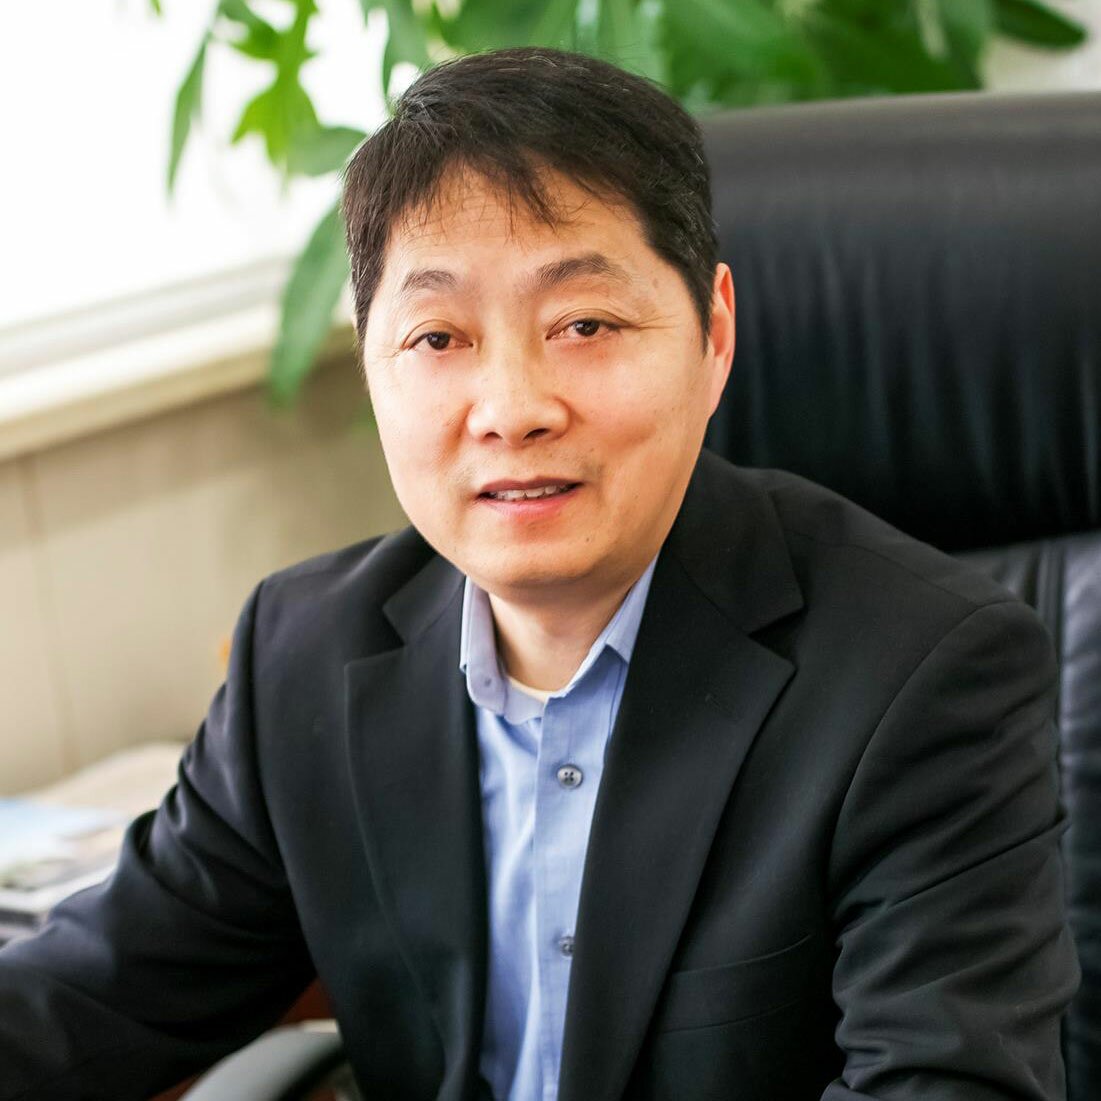 Prof. Xuebing Xu